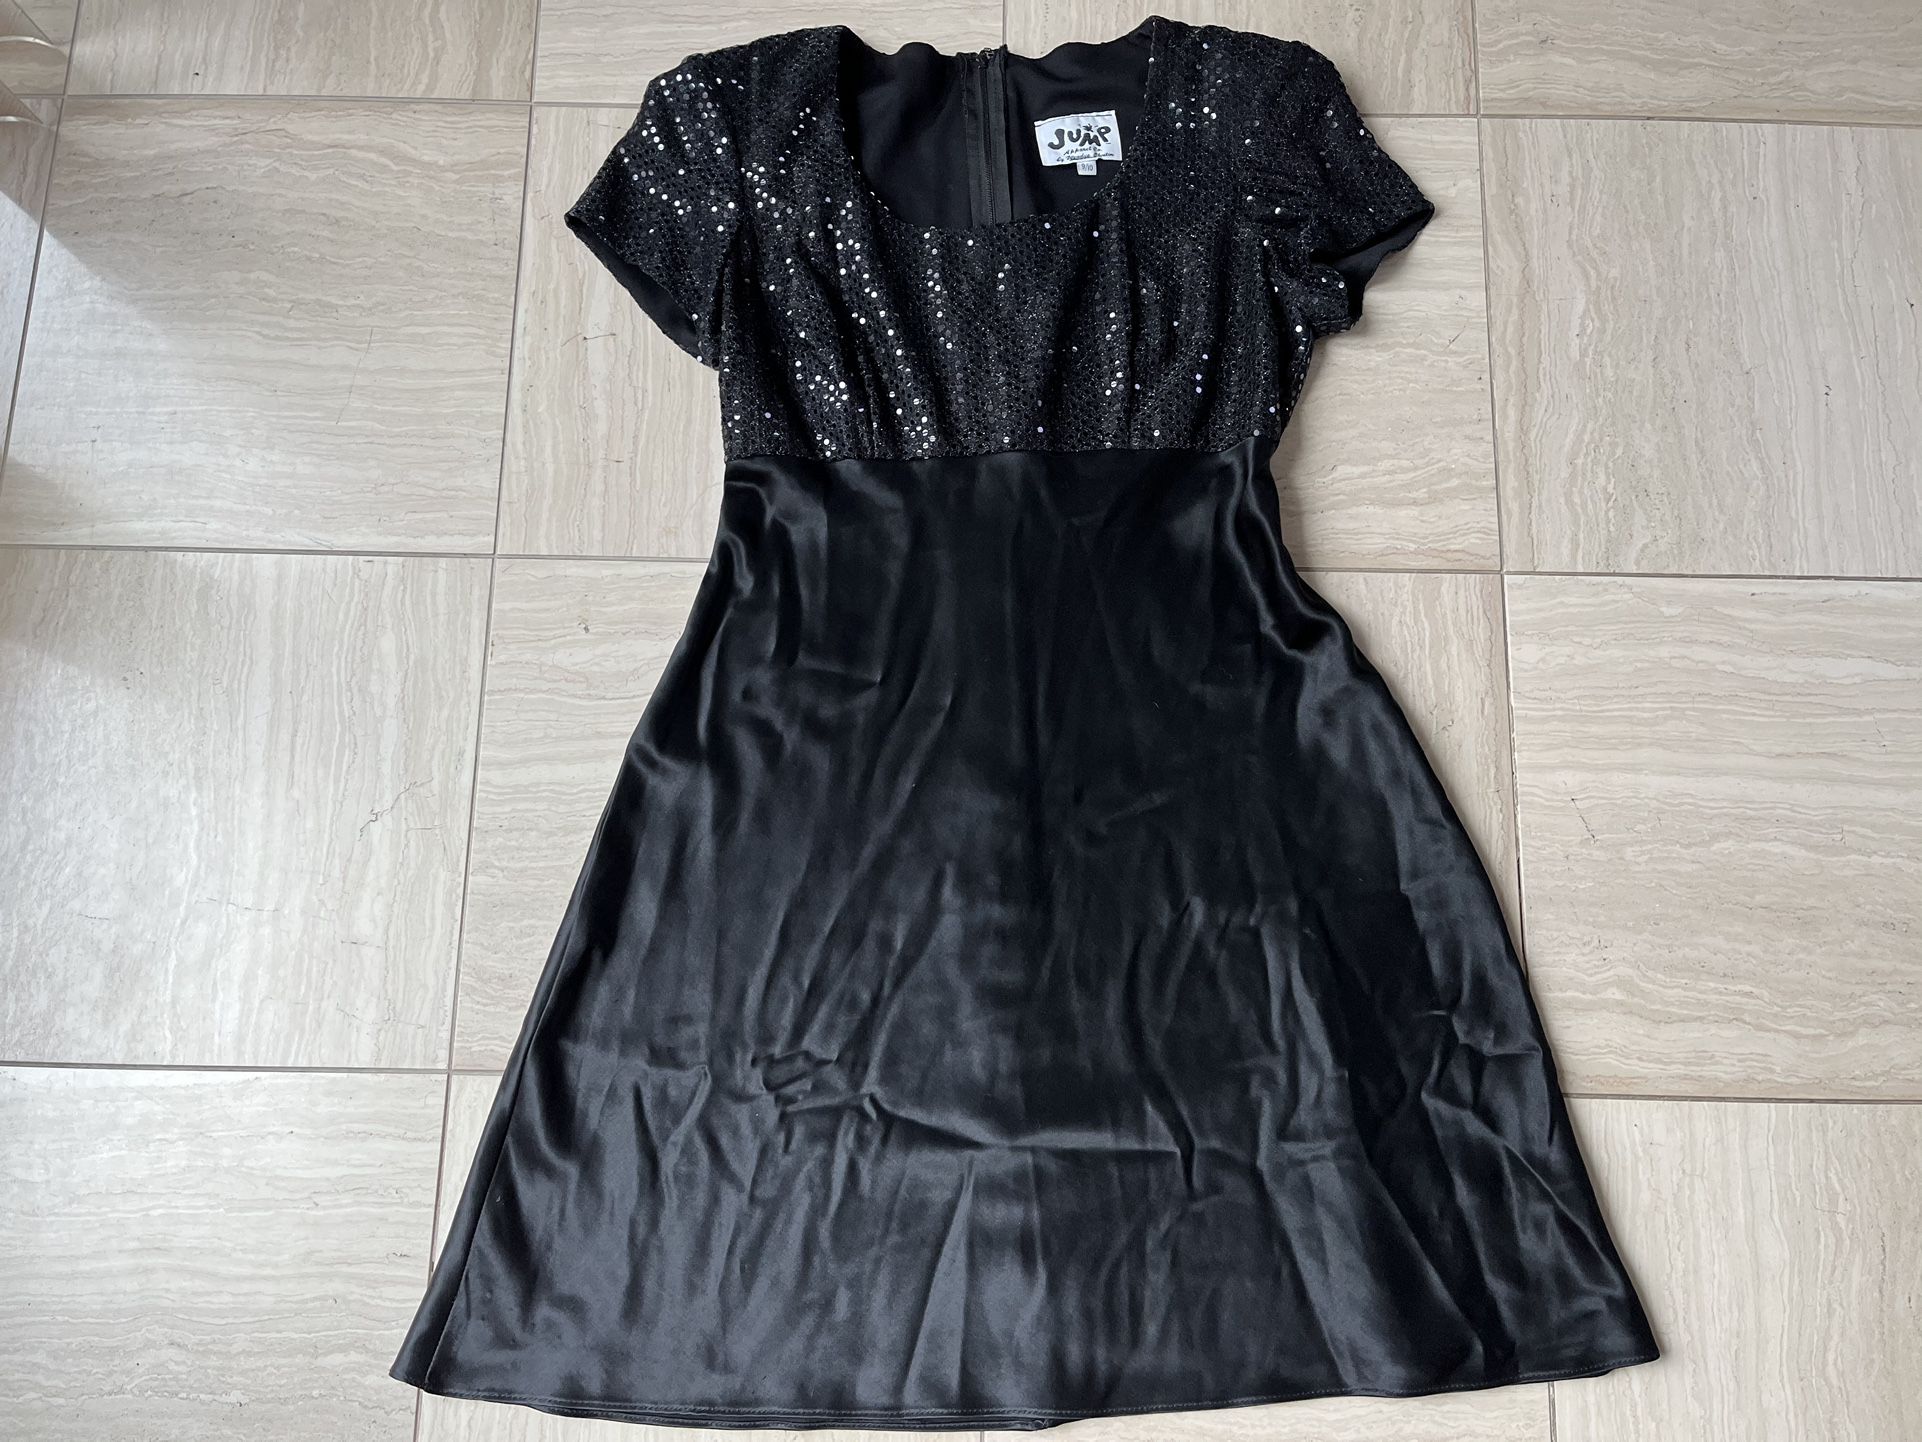 Black Sequin Top A-Line Dress - Junior’s Size 9/10